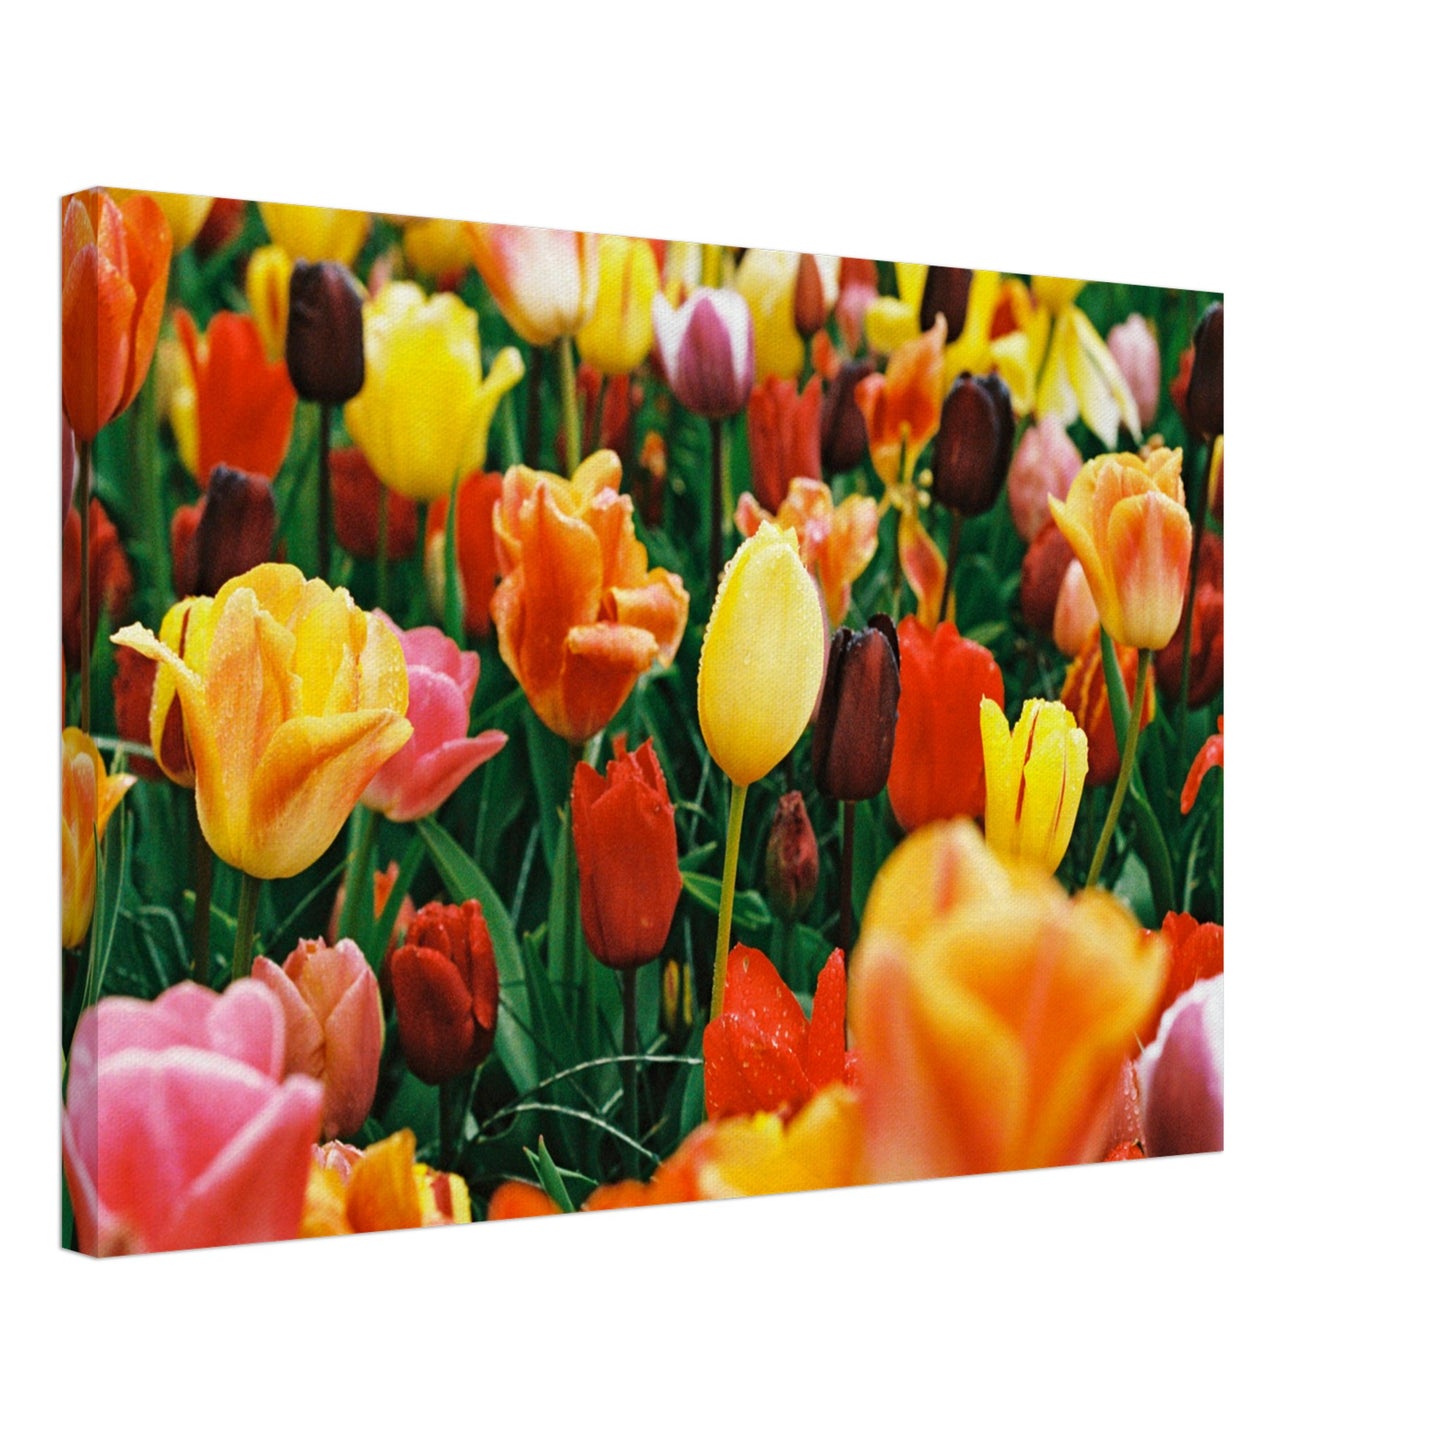 Dutch Tulip Field № 15